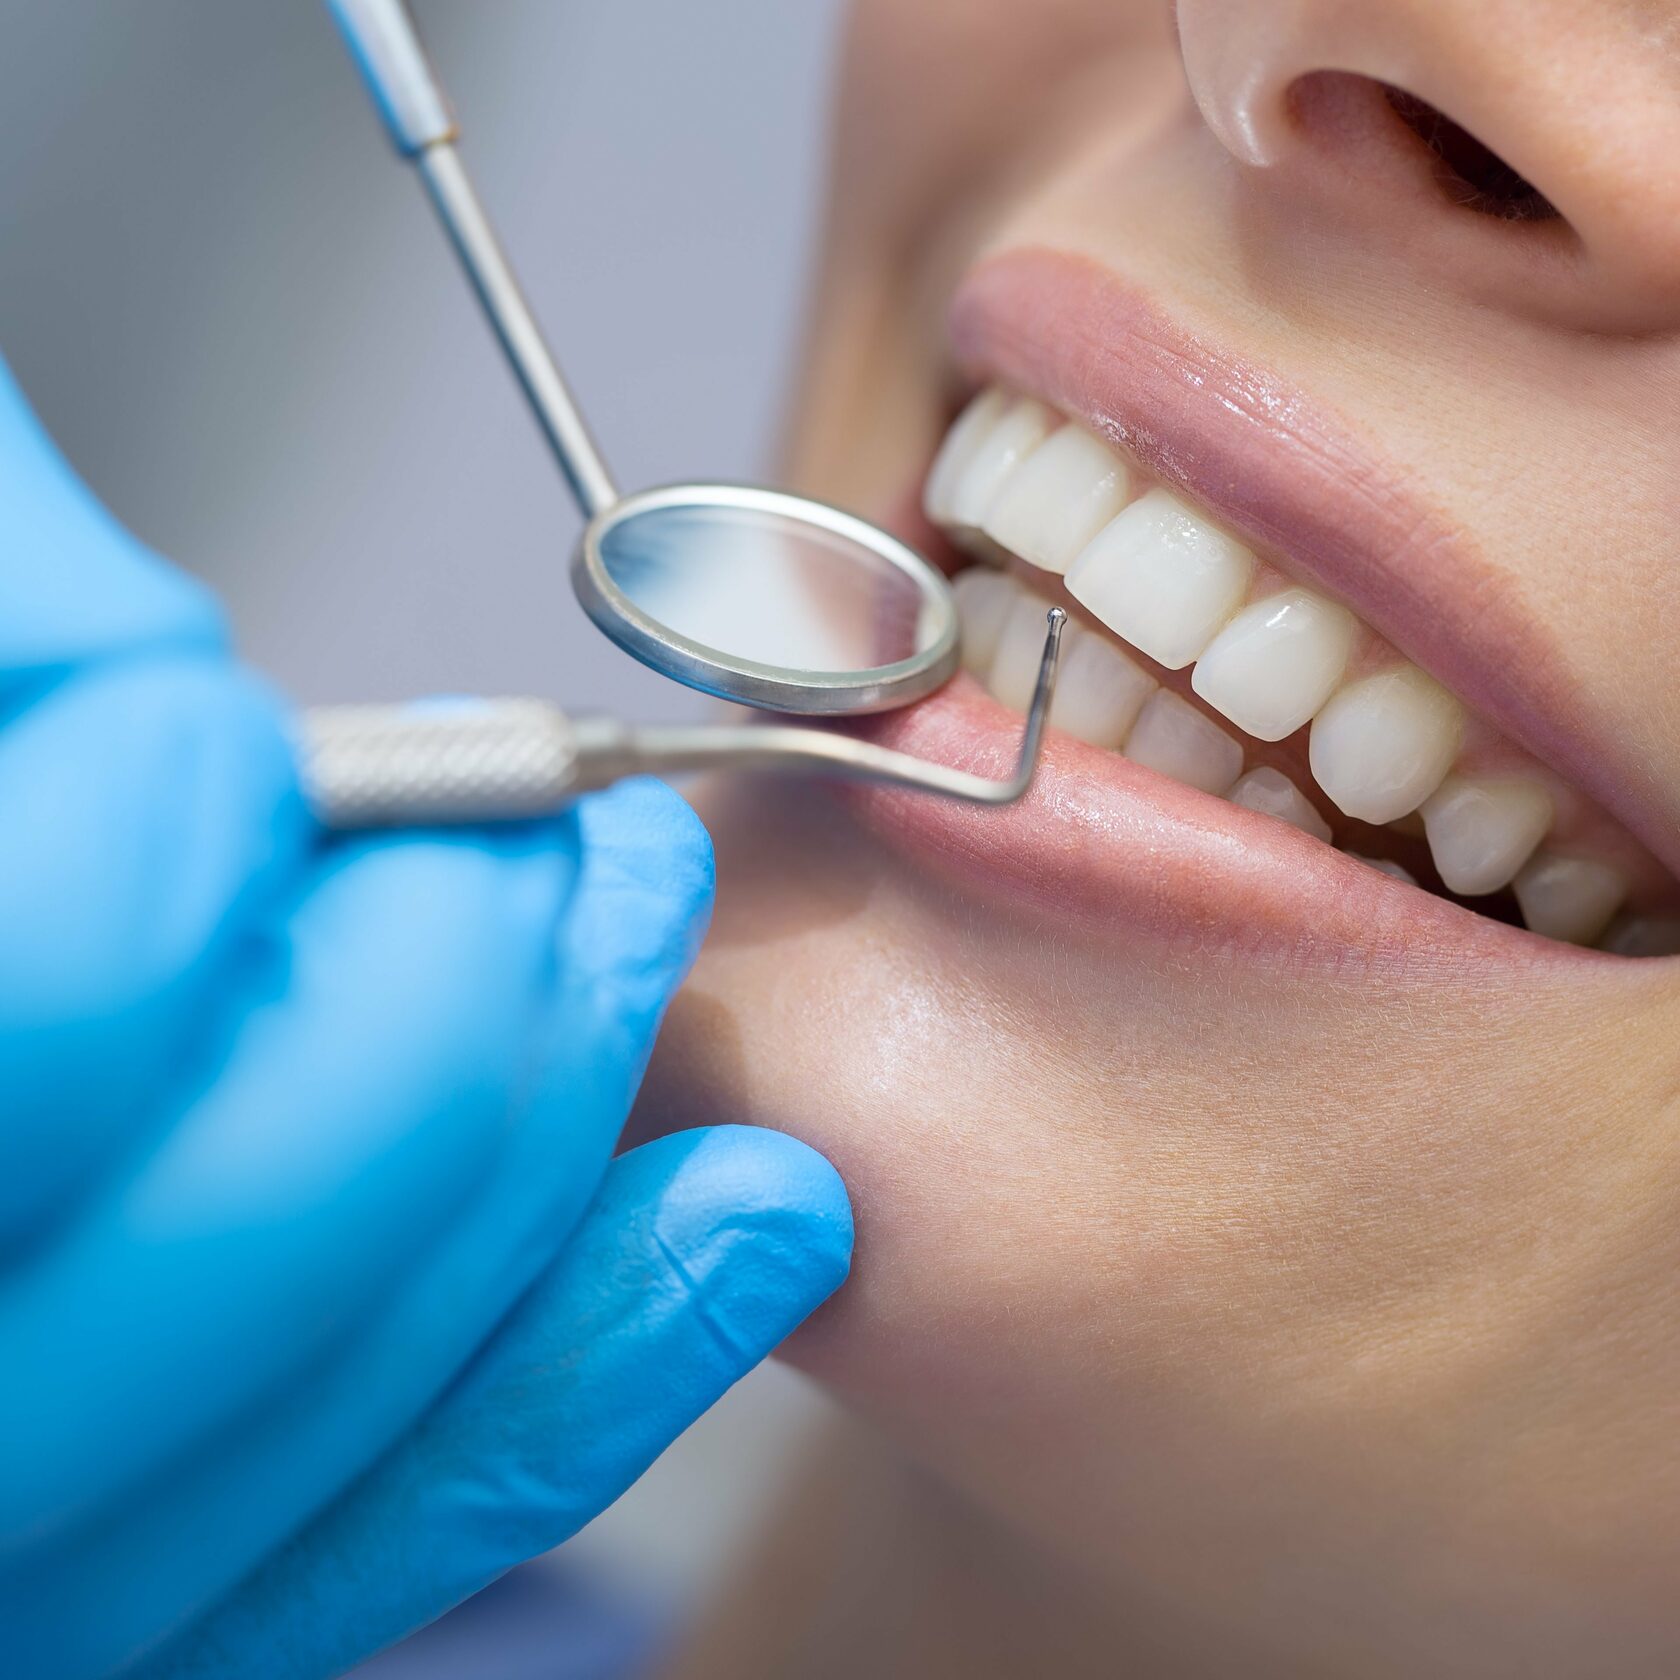 Гигиена десен. Профессиональная гигиена полости рта. Профессиональная гигиена полости рта в стоматологии. Красивые зубы стоматология. Сайт стоматологии.